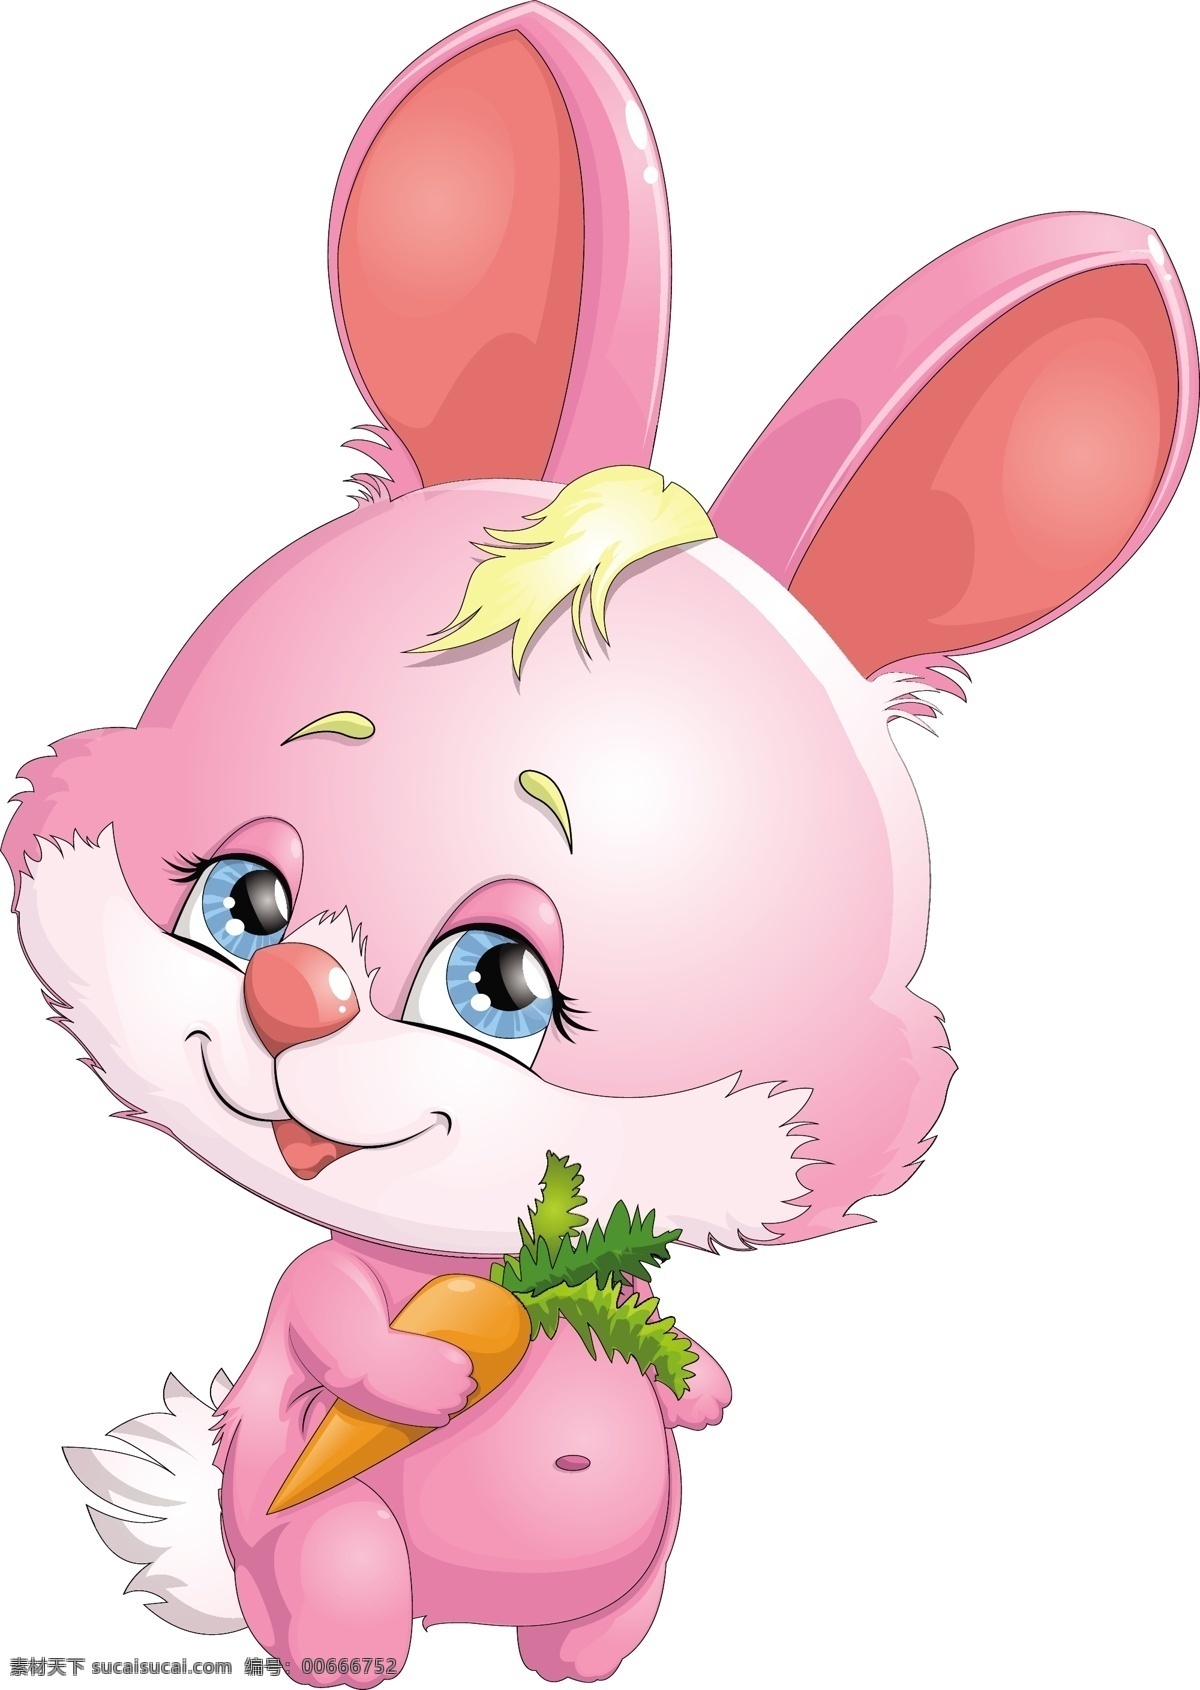 手 胡萝卜 的卡 通 兔子 卡通兔子 卡通动物插画 卡通漫画动物 矢量动物 可爱卡通 陆地动物 生物世界 矢量素材 白色